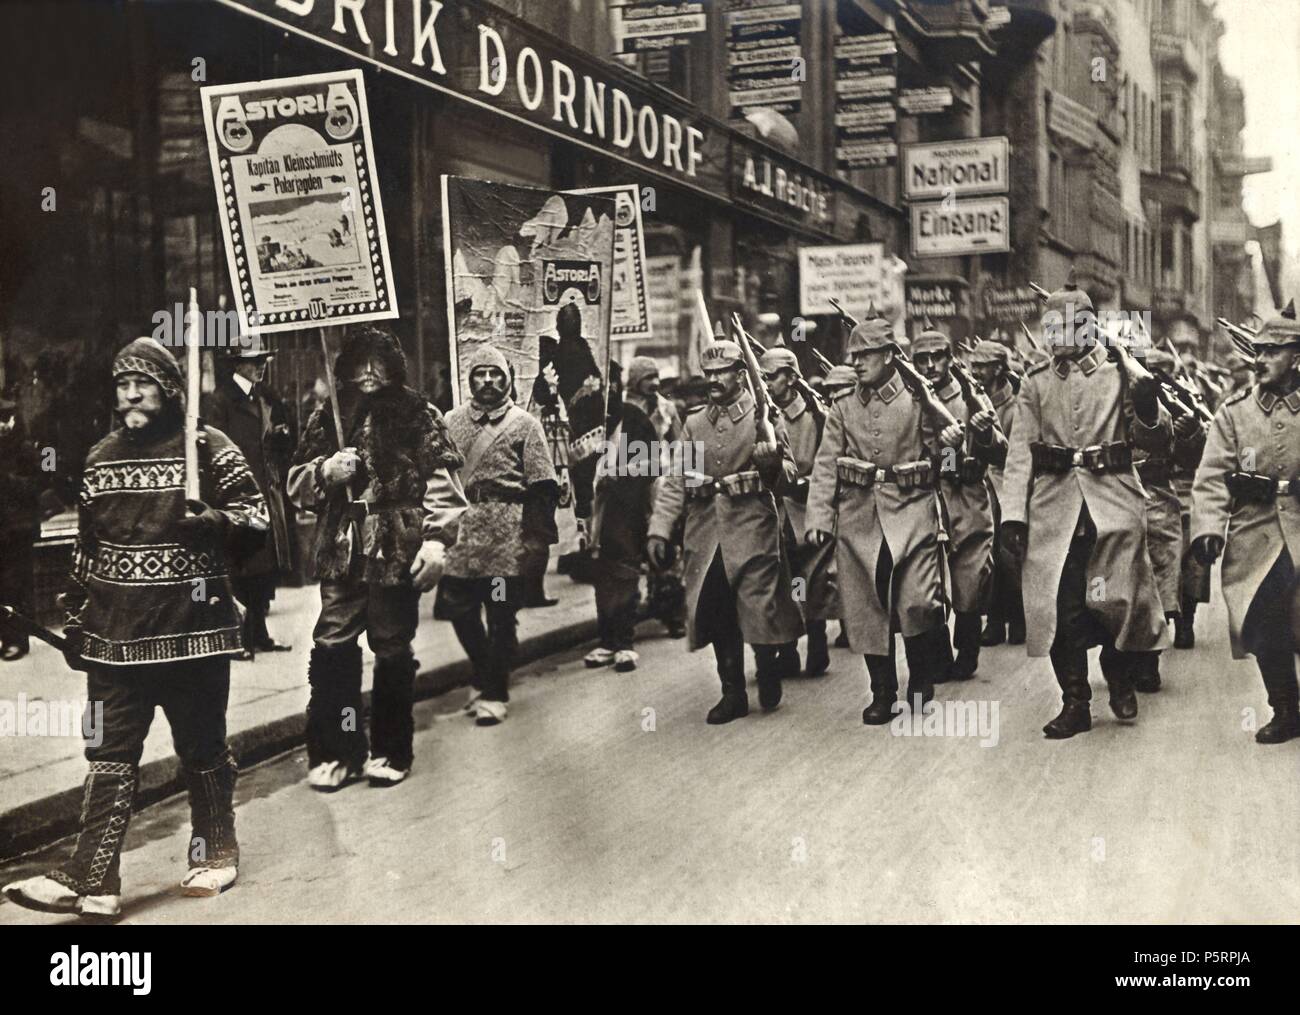 Guerra mundial 1914-1918. Regimiento de infantería alemán desfilando por las calles de Leipzig. Año 1914. Stock Photo